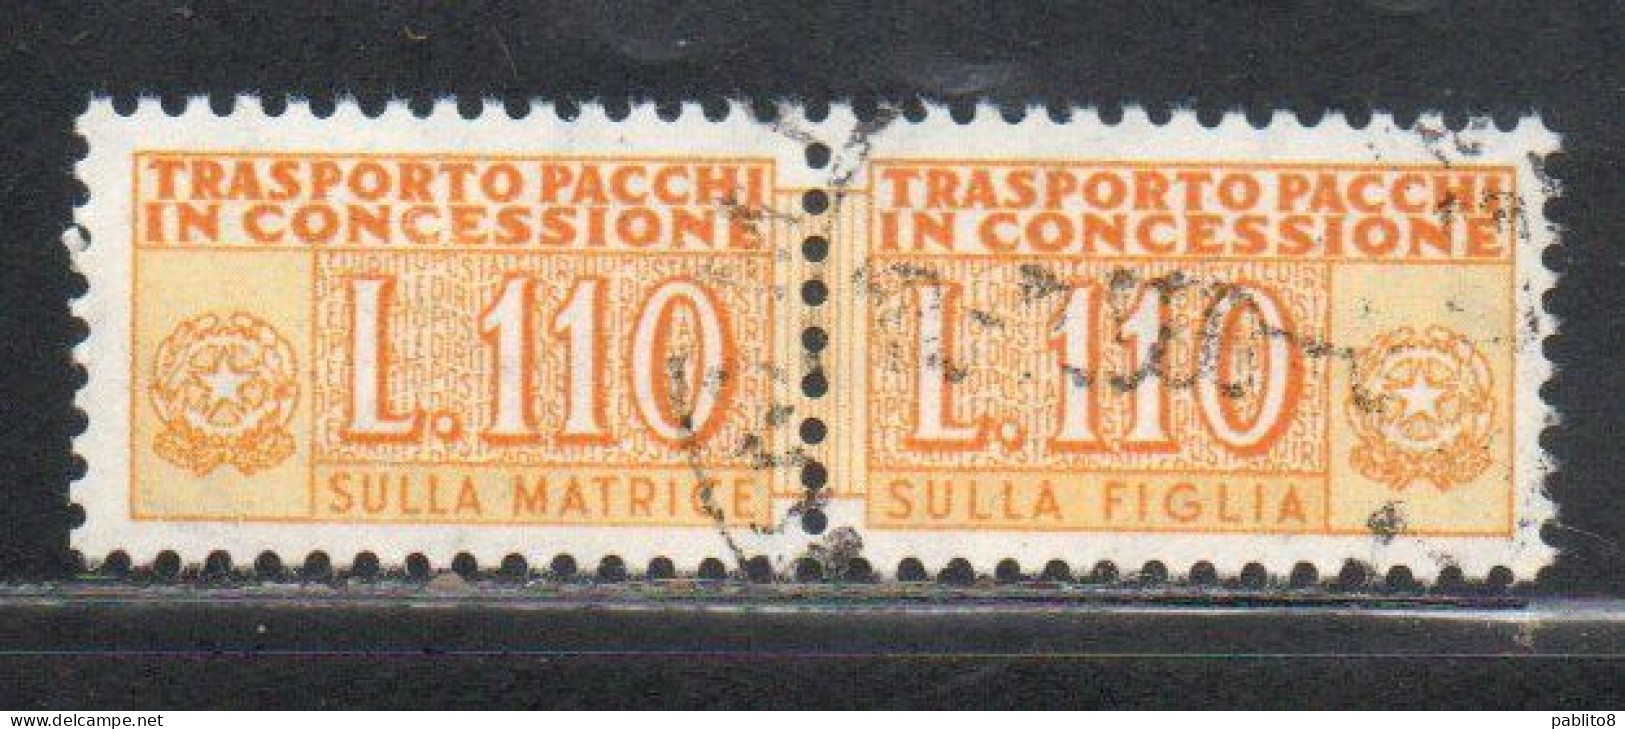 ITALIA REPUBBLICA ITALY REPUBLIC 1955 1981 PACCHI IN CONCESSIONE PARCEL POST STELLE STARS 1960 LIRE 110 USATO USED OBLIT - Pacchi In Concessione